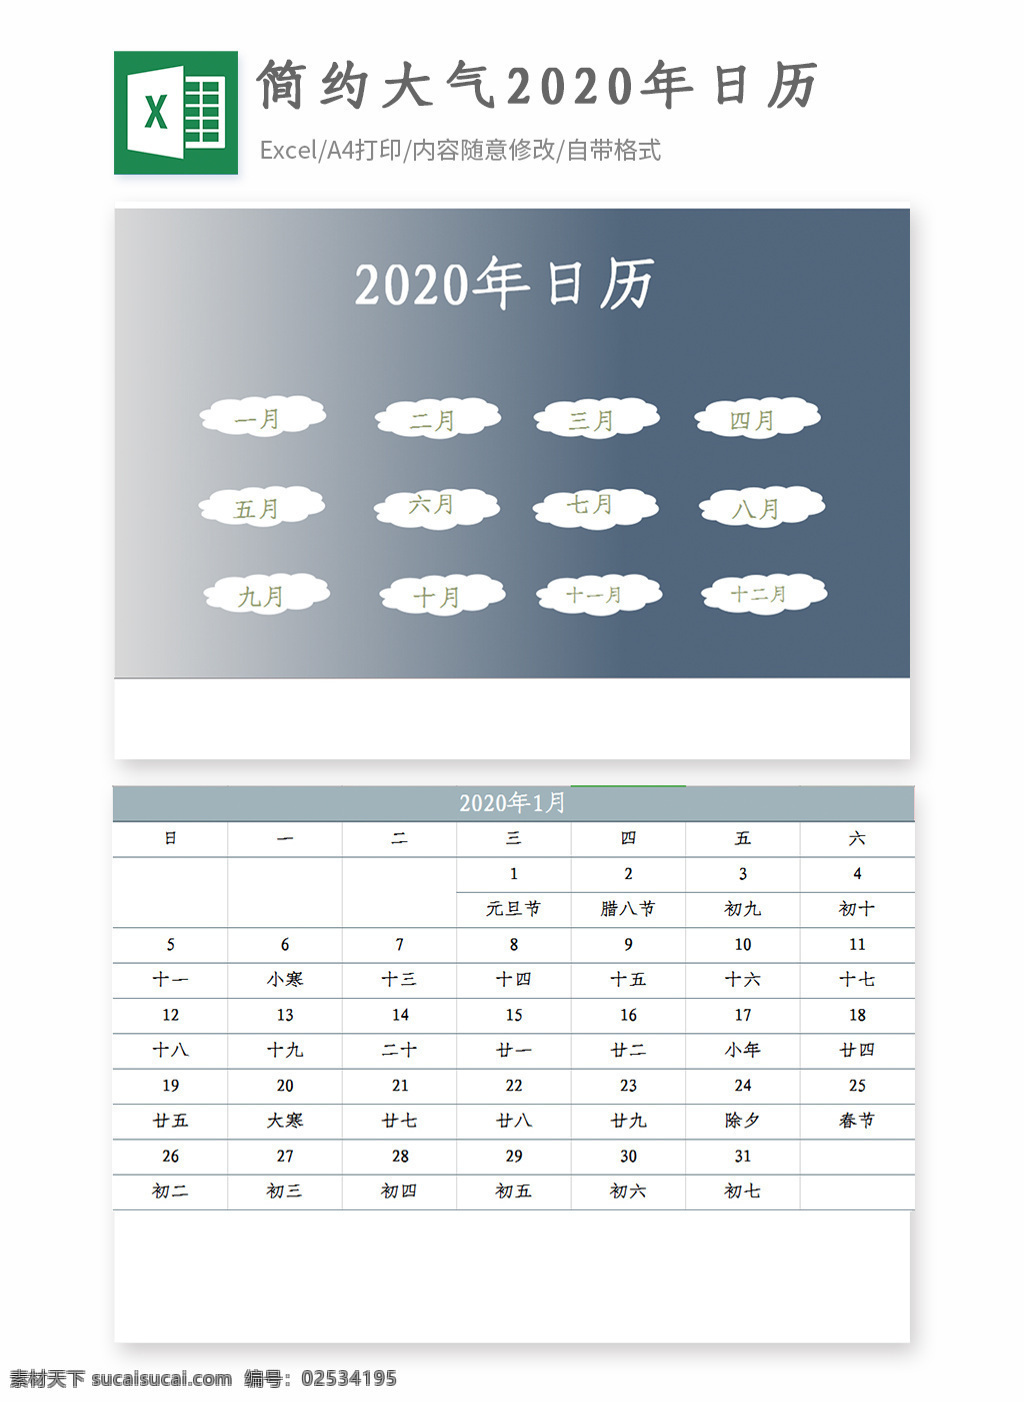 2020 小 清新 日历 excel 模板 简约 大气 年历 自动生成 预算表